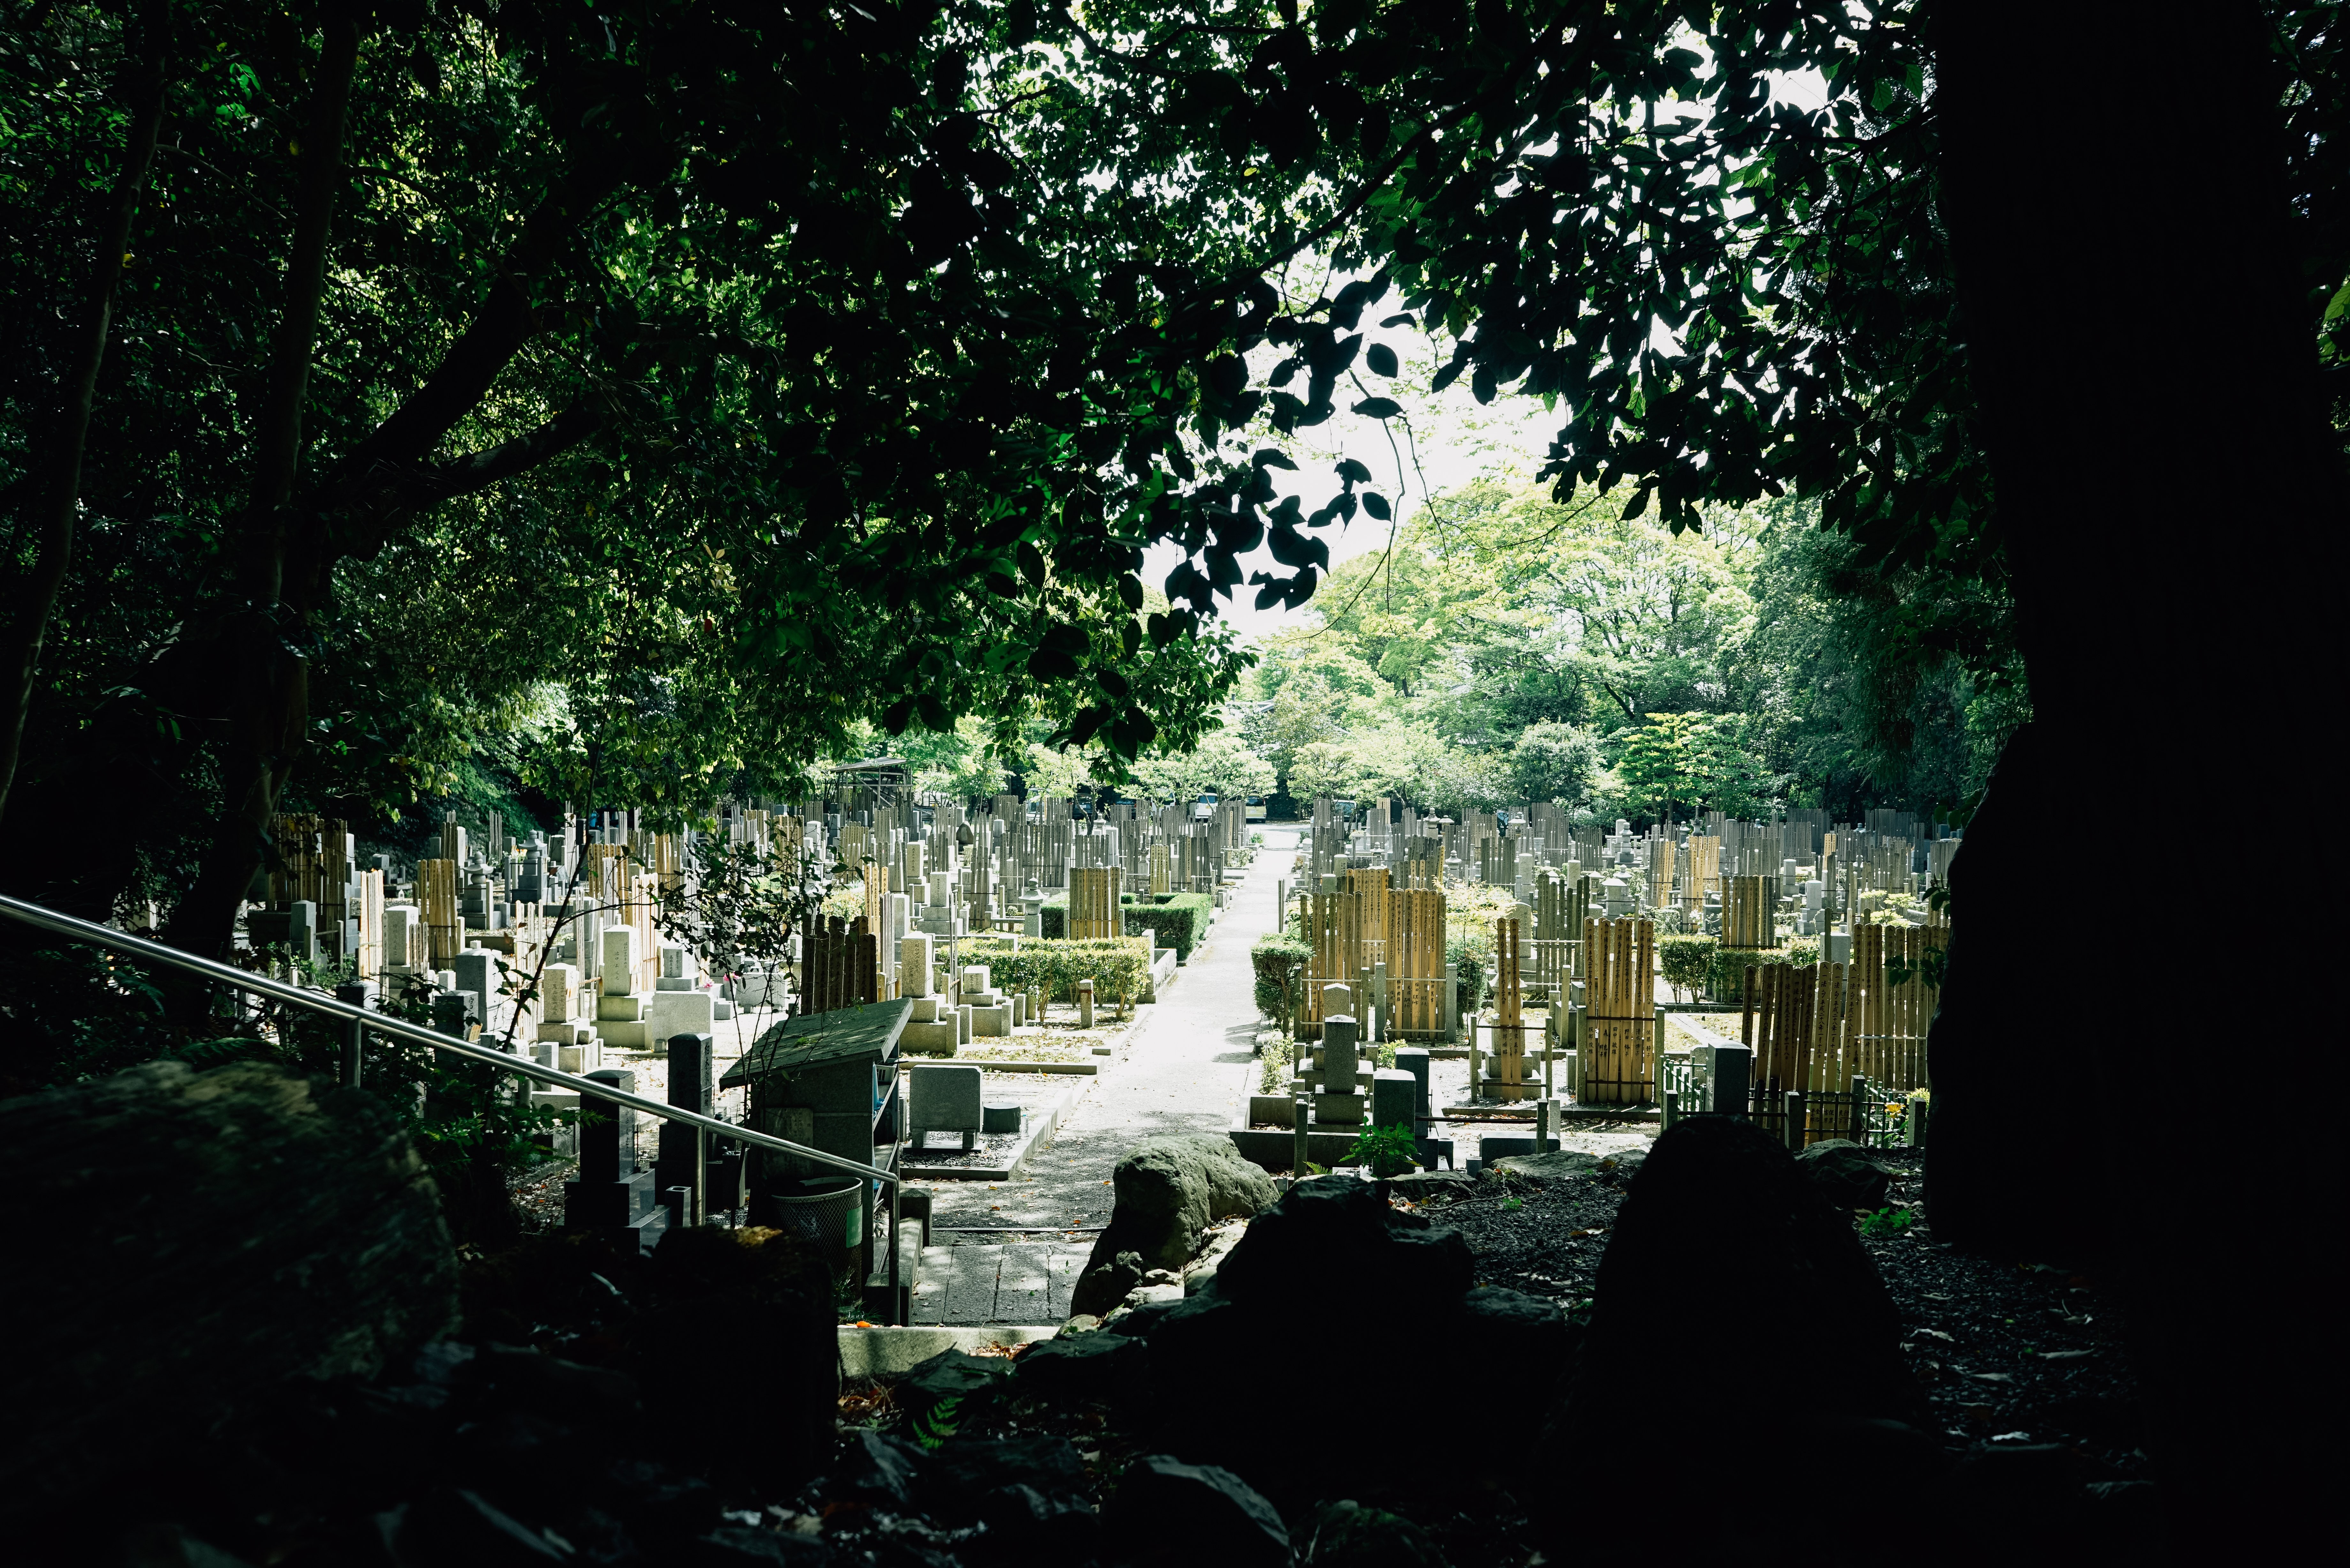 Foto Pemakaman Jepang yang Menerangi Sinar Matahari